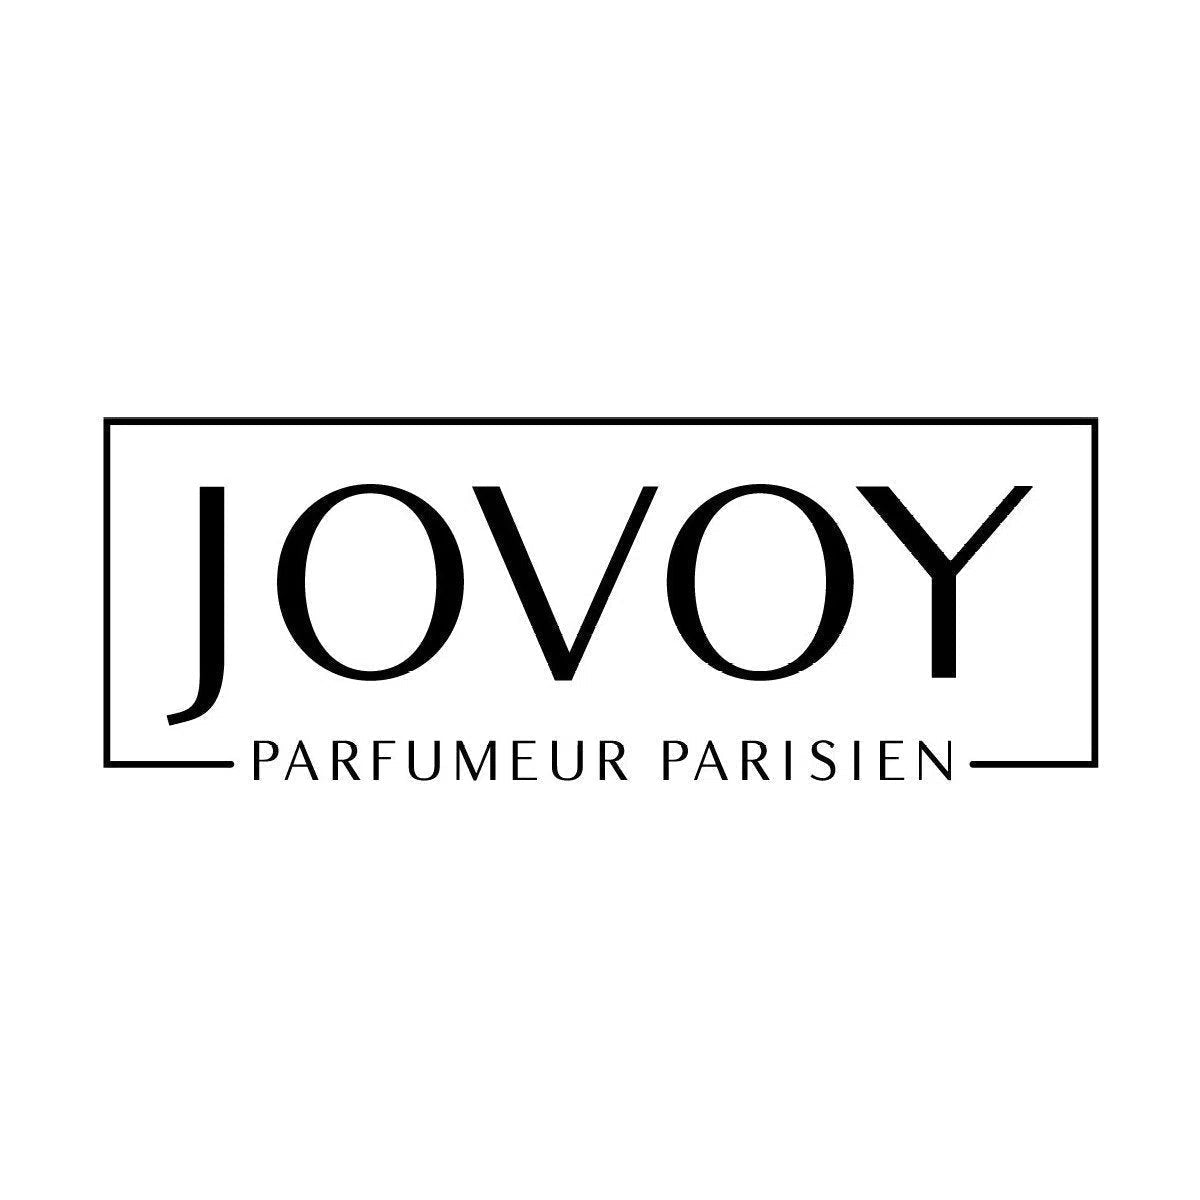 Perfumes Jovoy Paris originales solo en Prive Perfumes